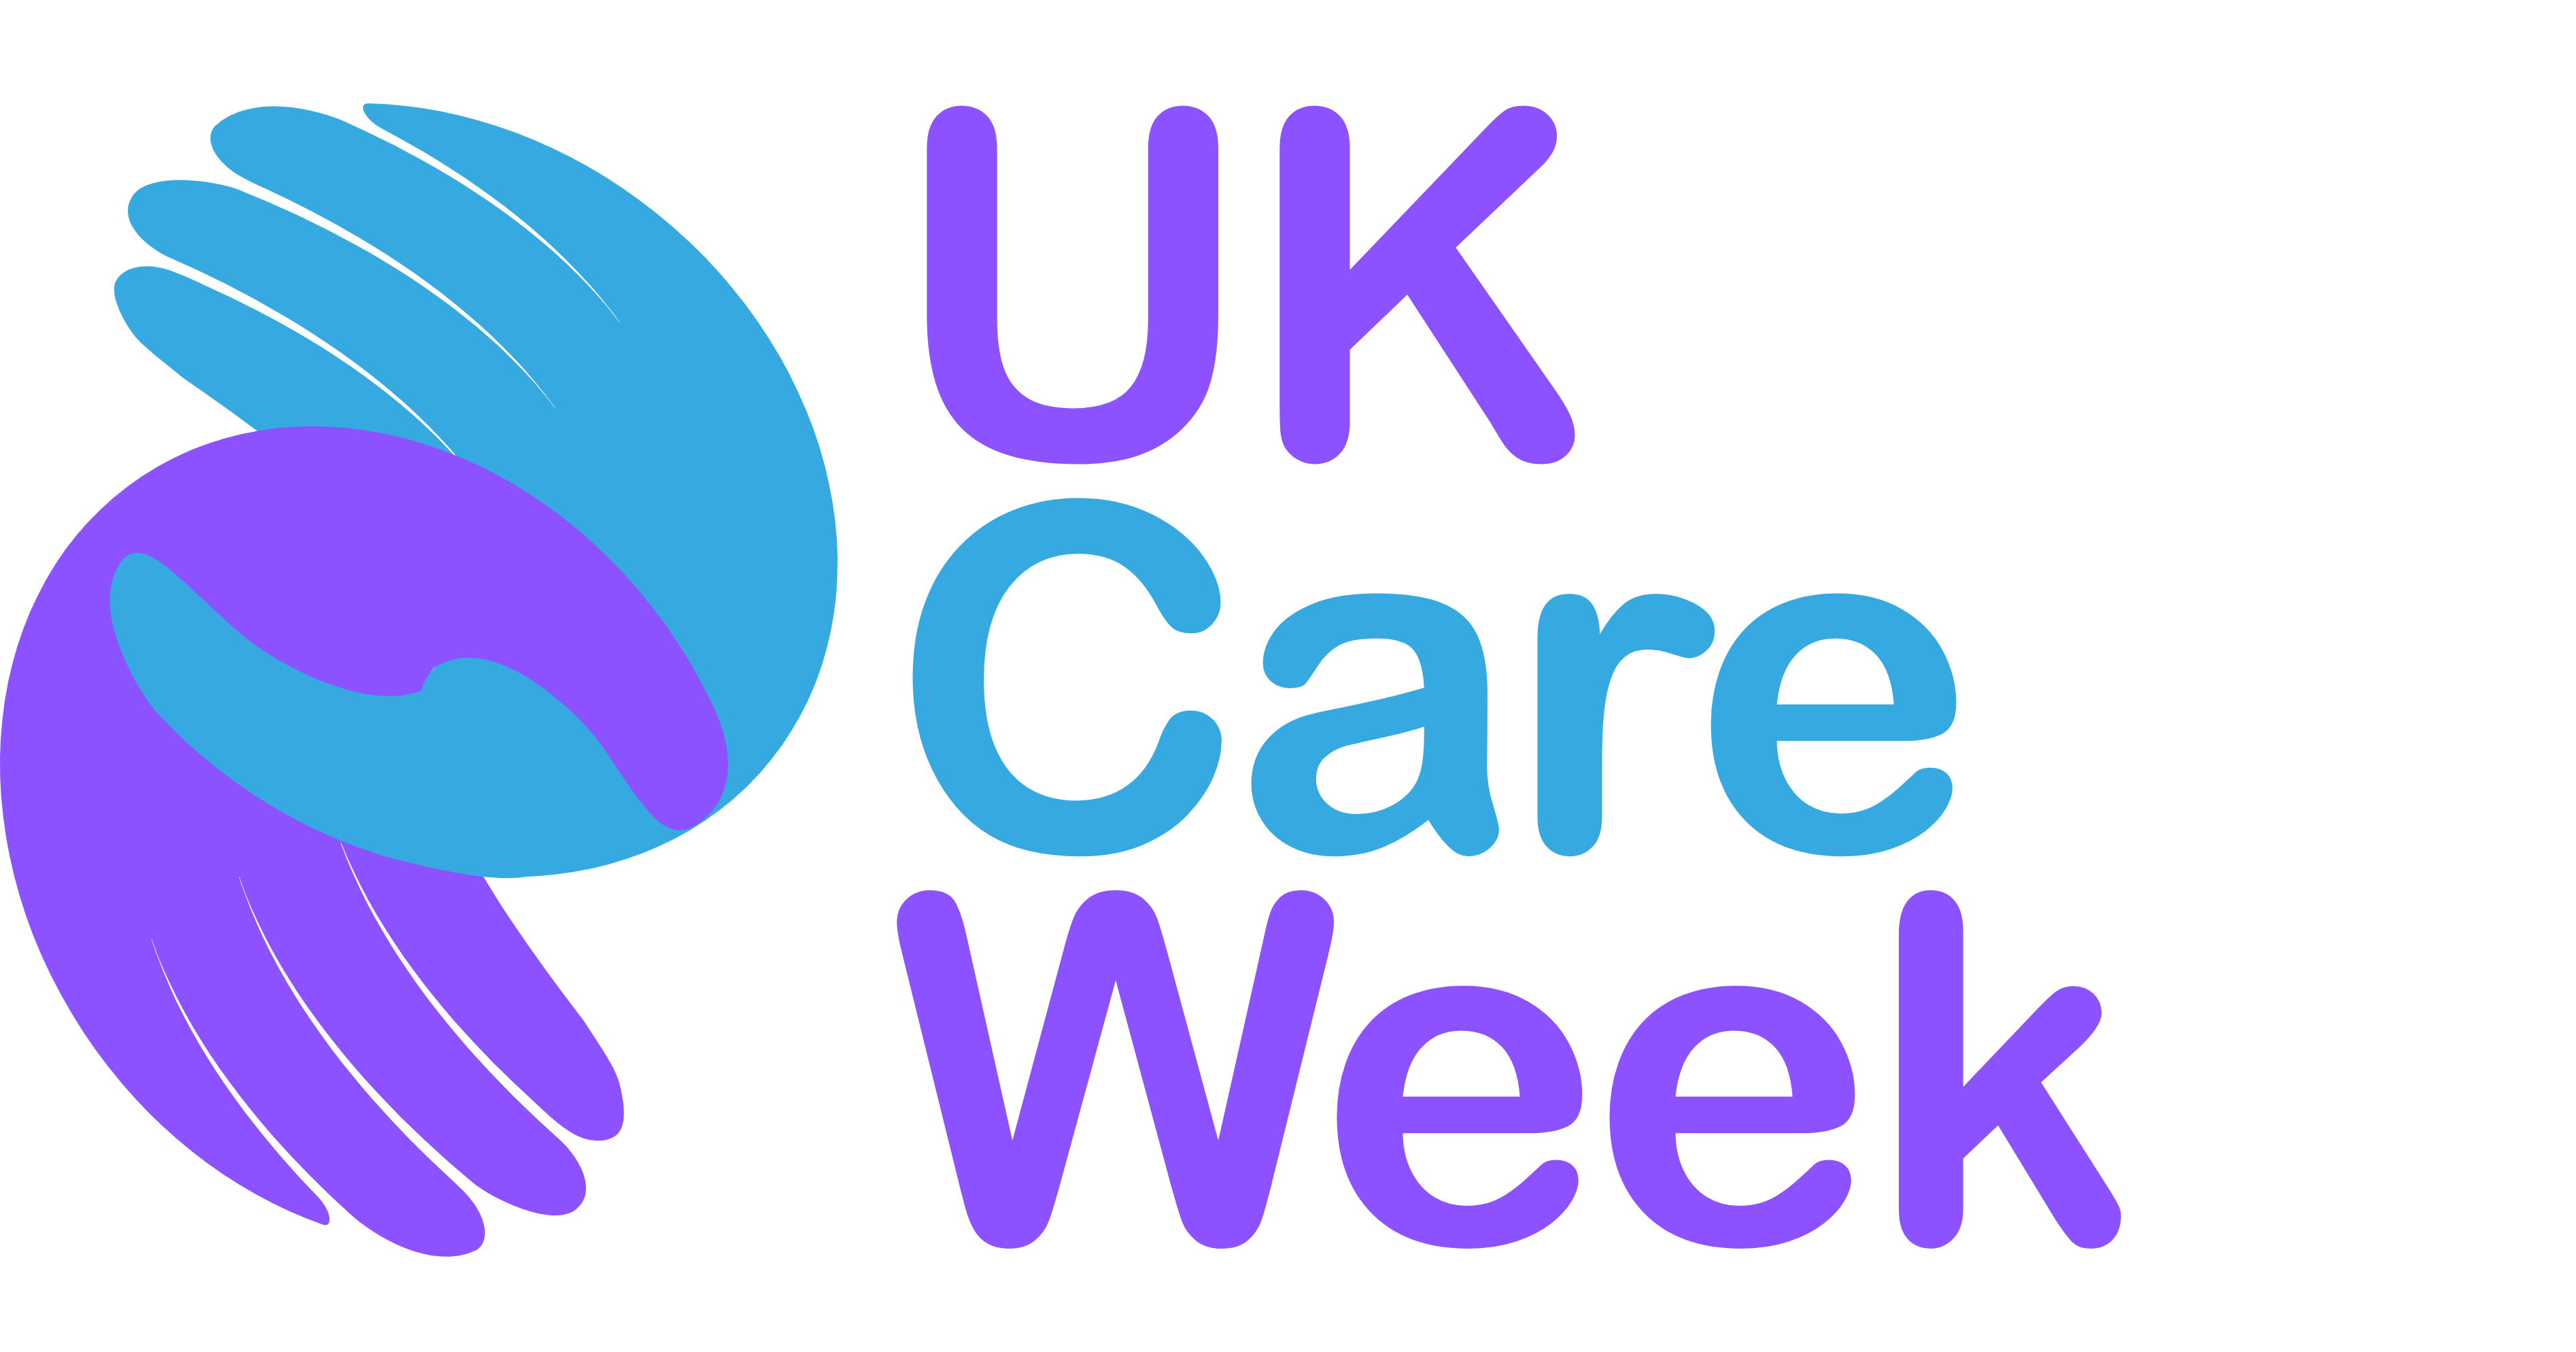 UK Care week logo.png